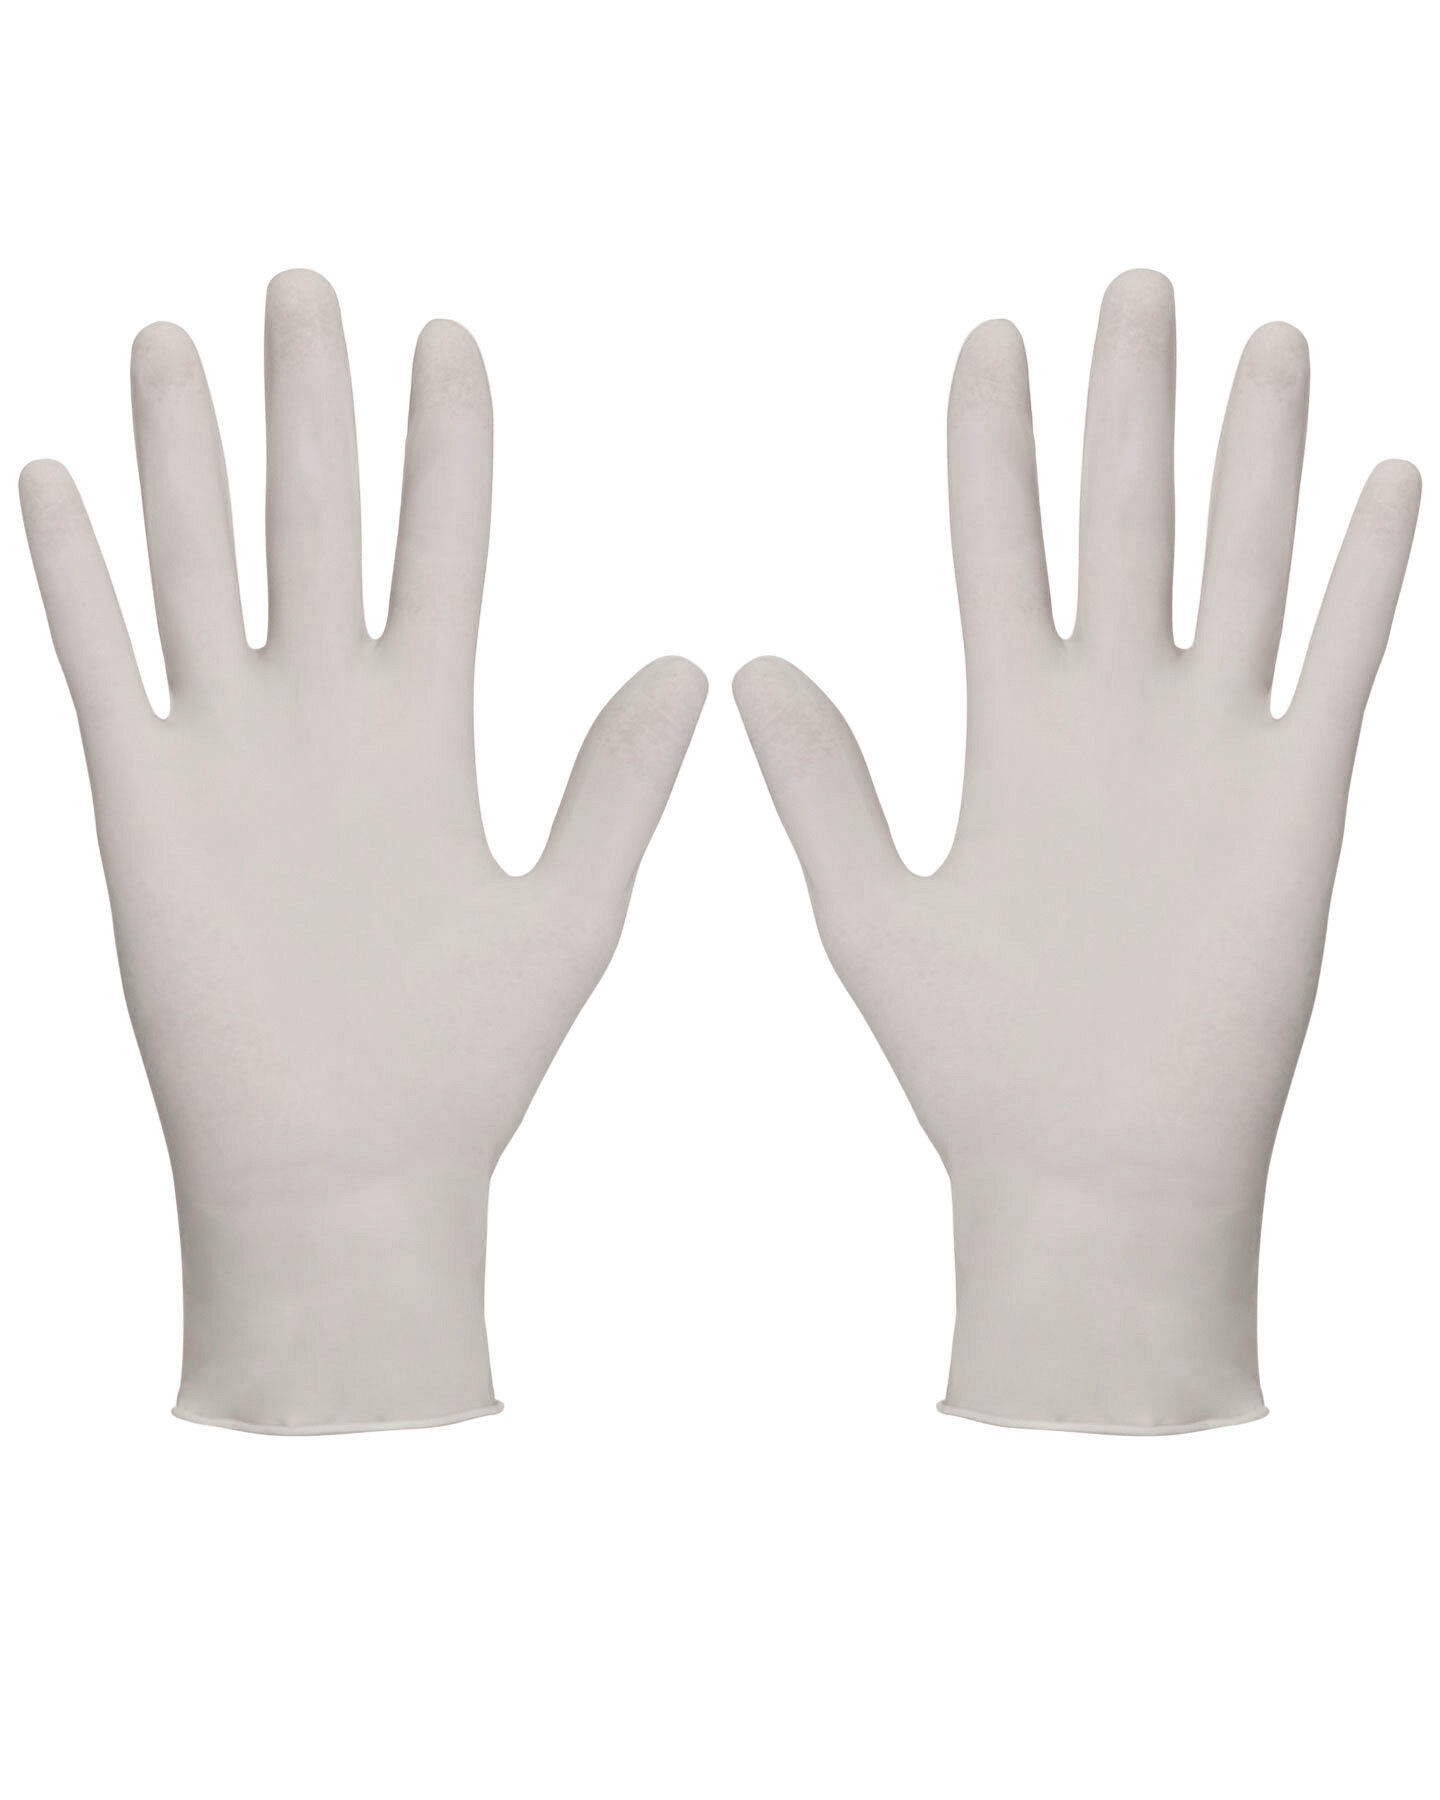 Перчатки хирургические нестерильные (АЗРИ) (отгрузка кратно 25 пар)